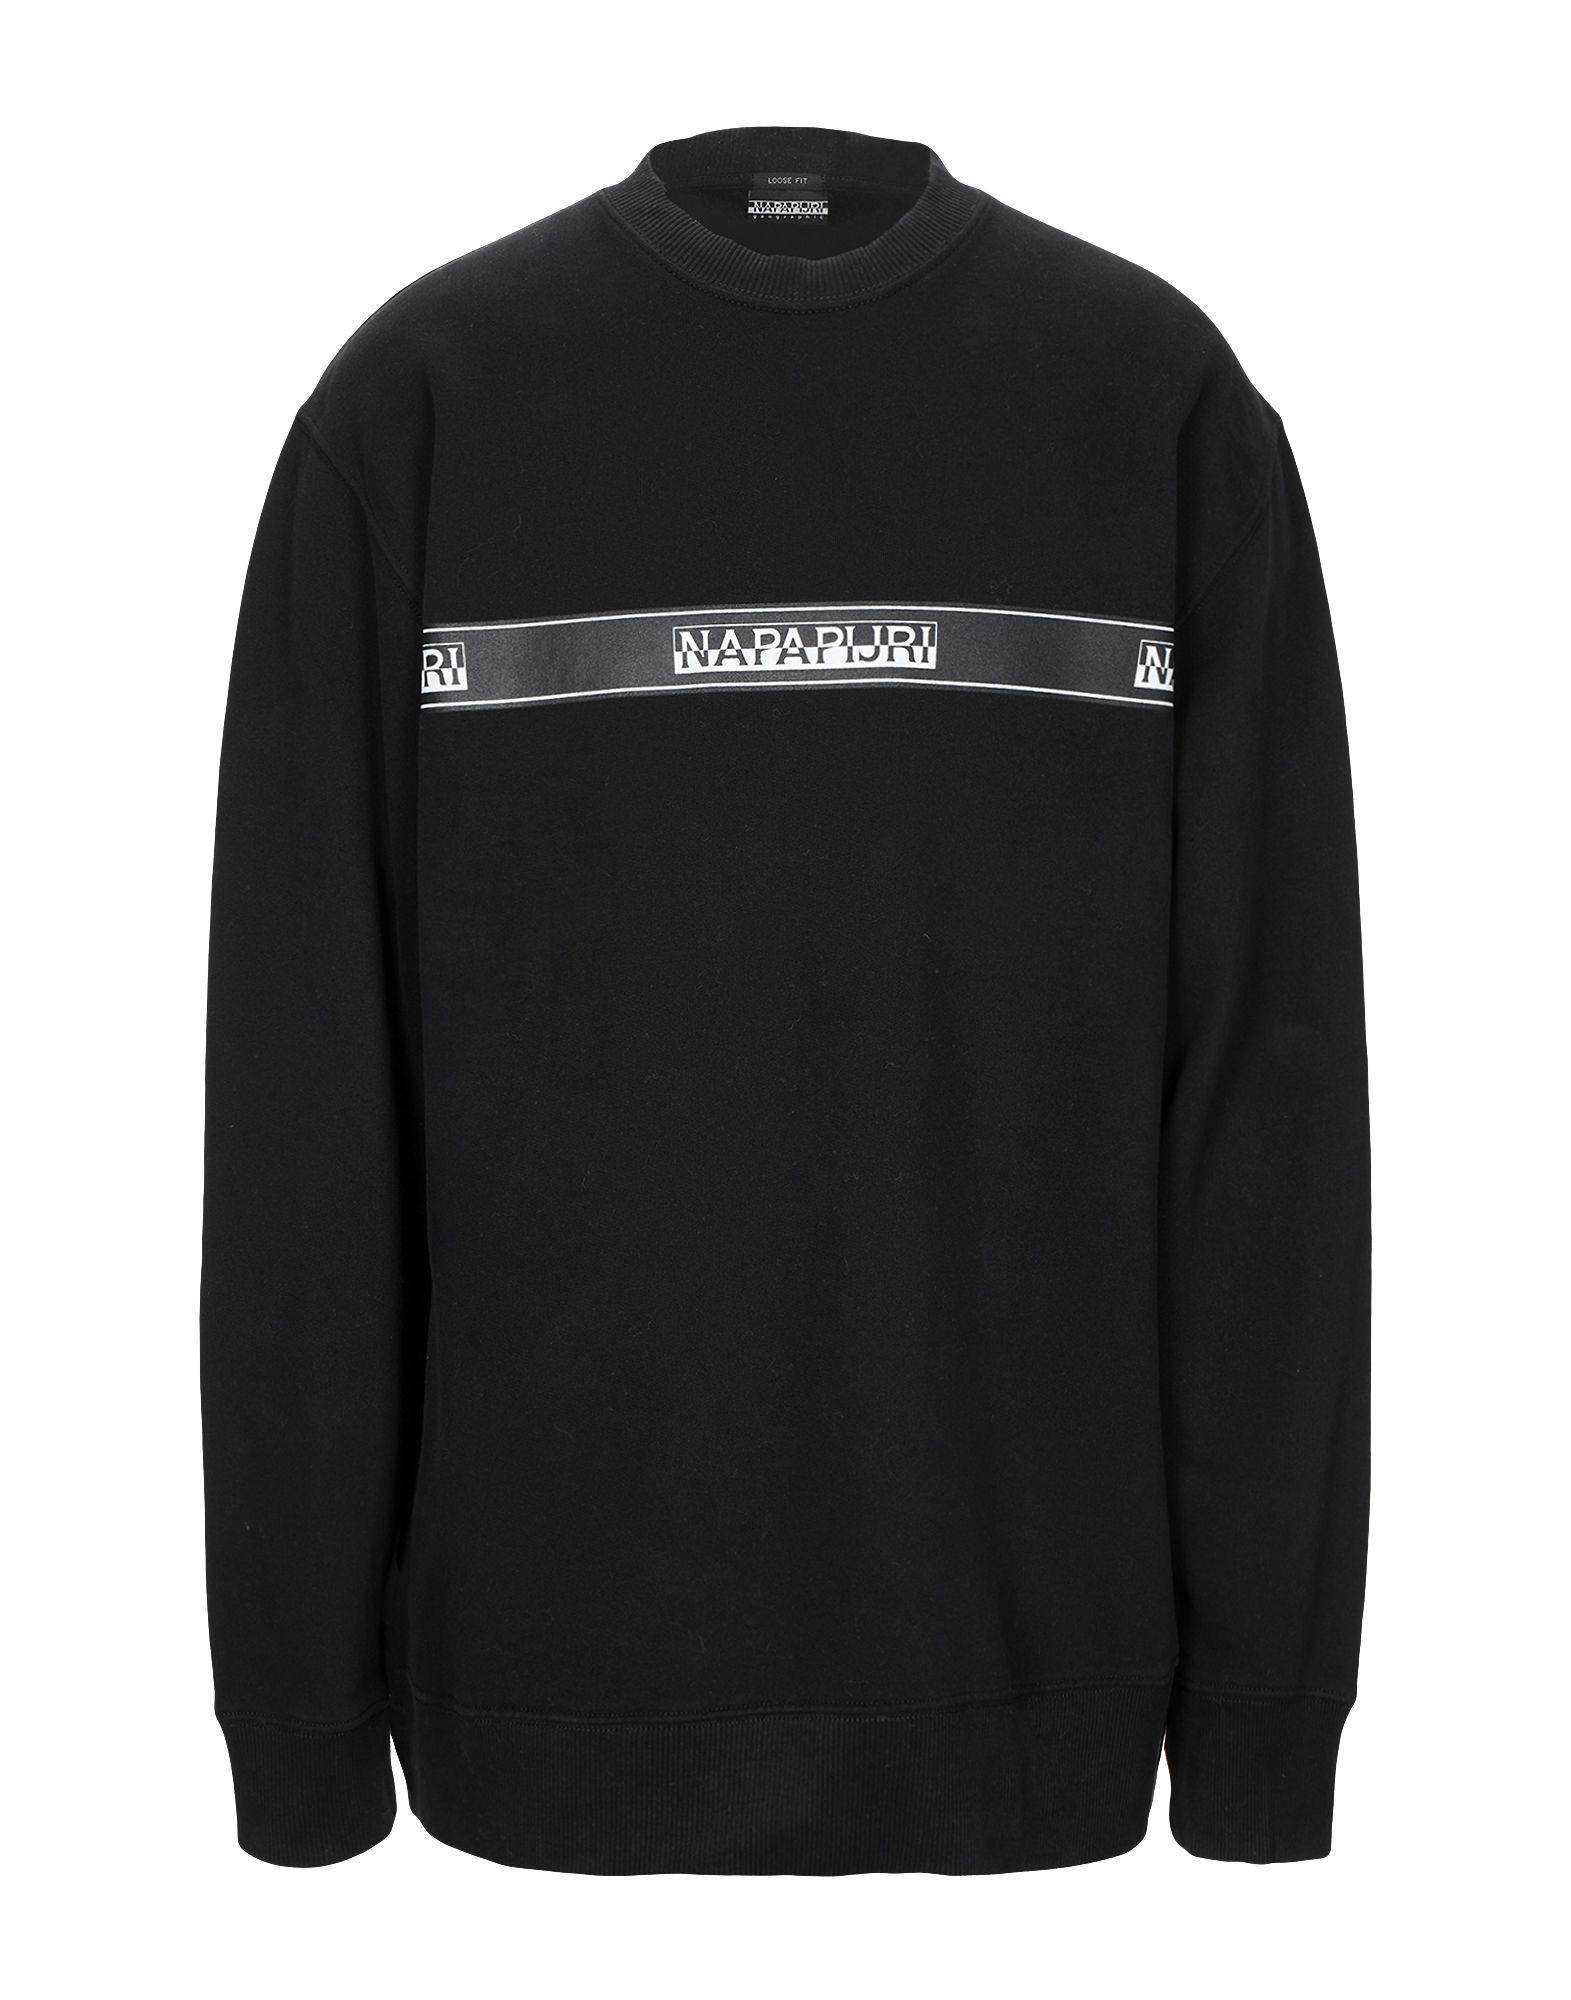 Napapijri Fleece Sweatshirt in Black for Men - Lyst